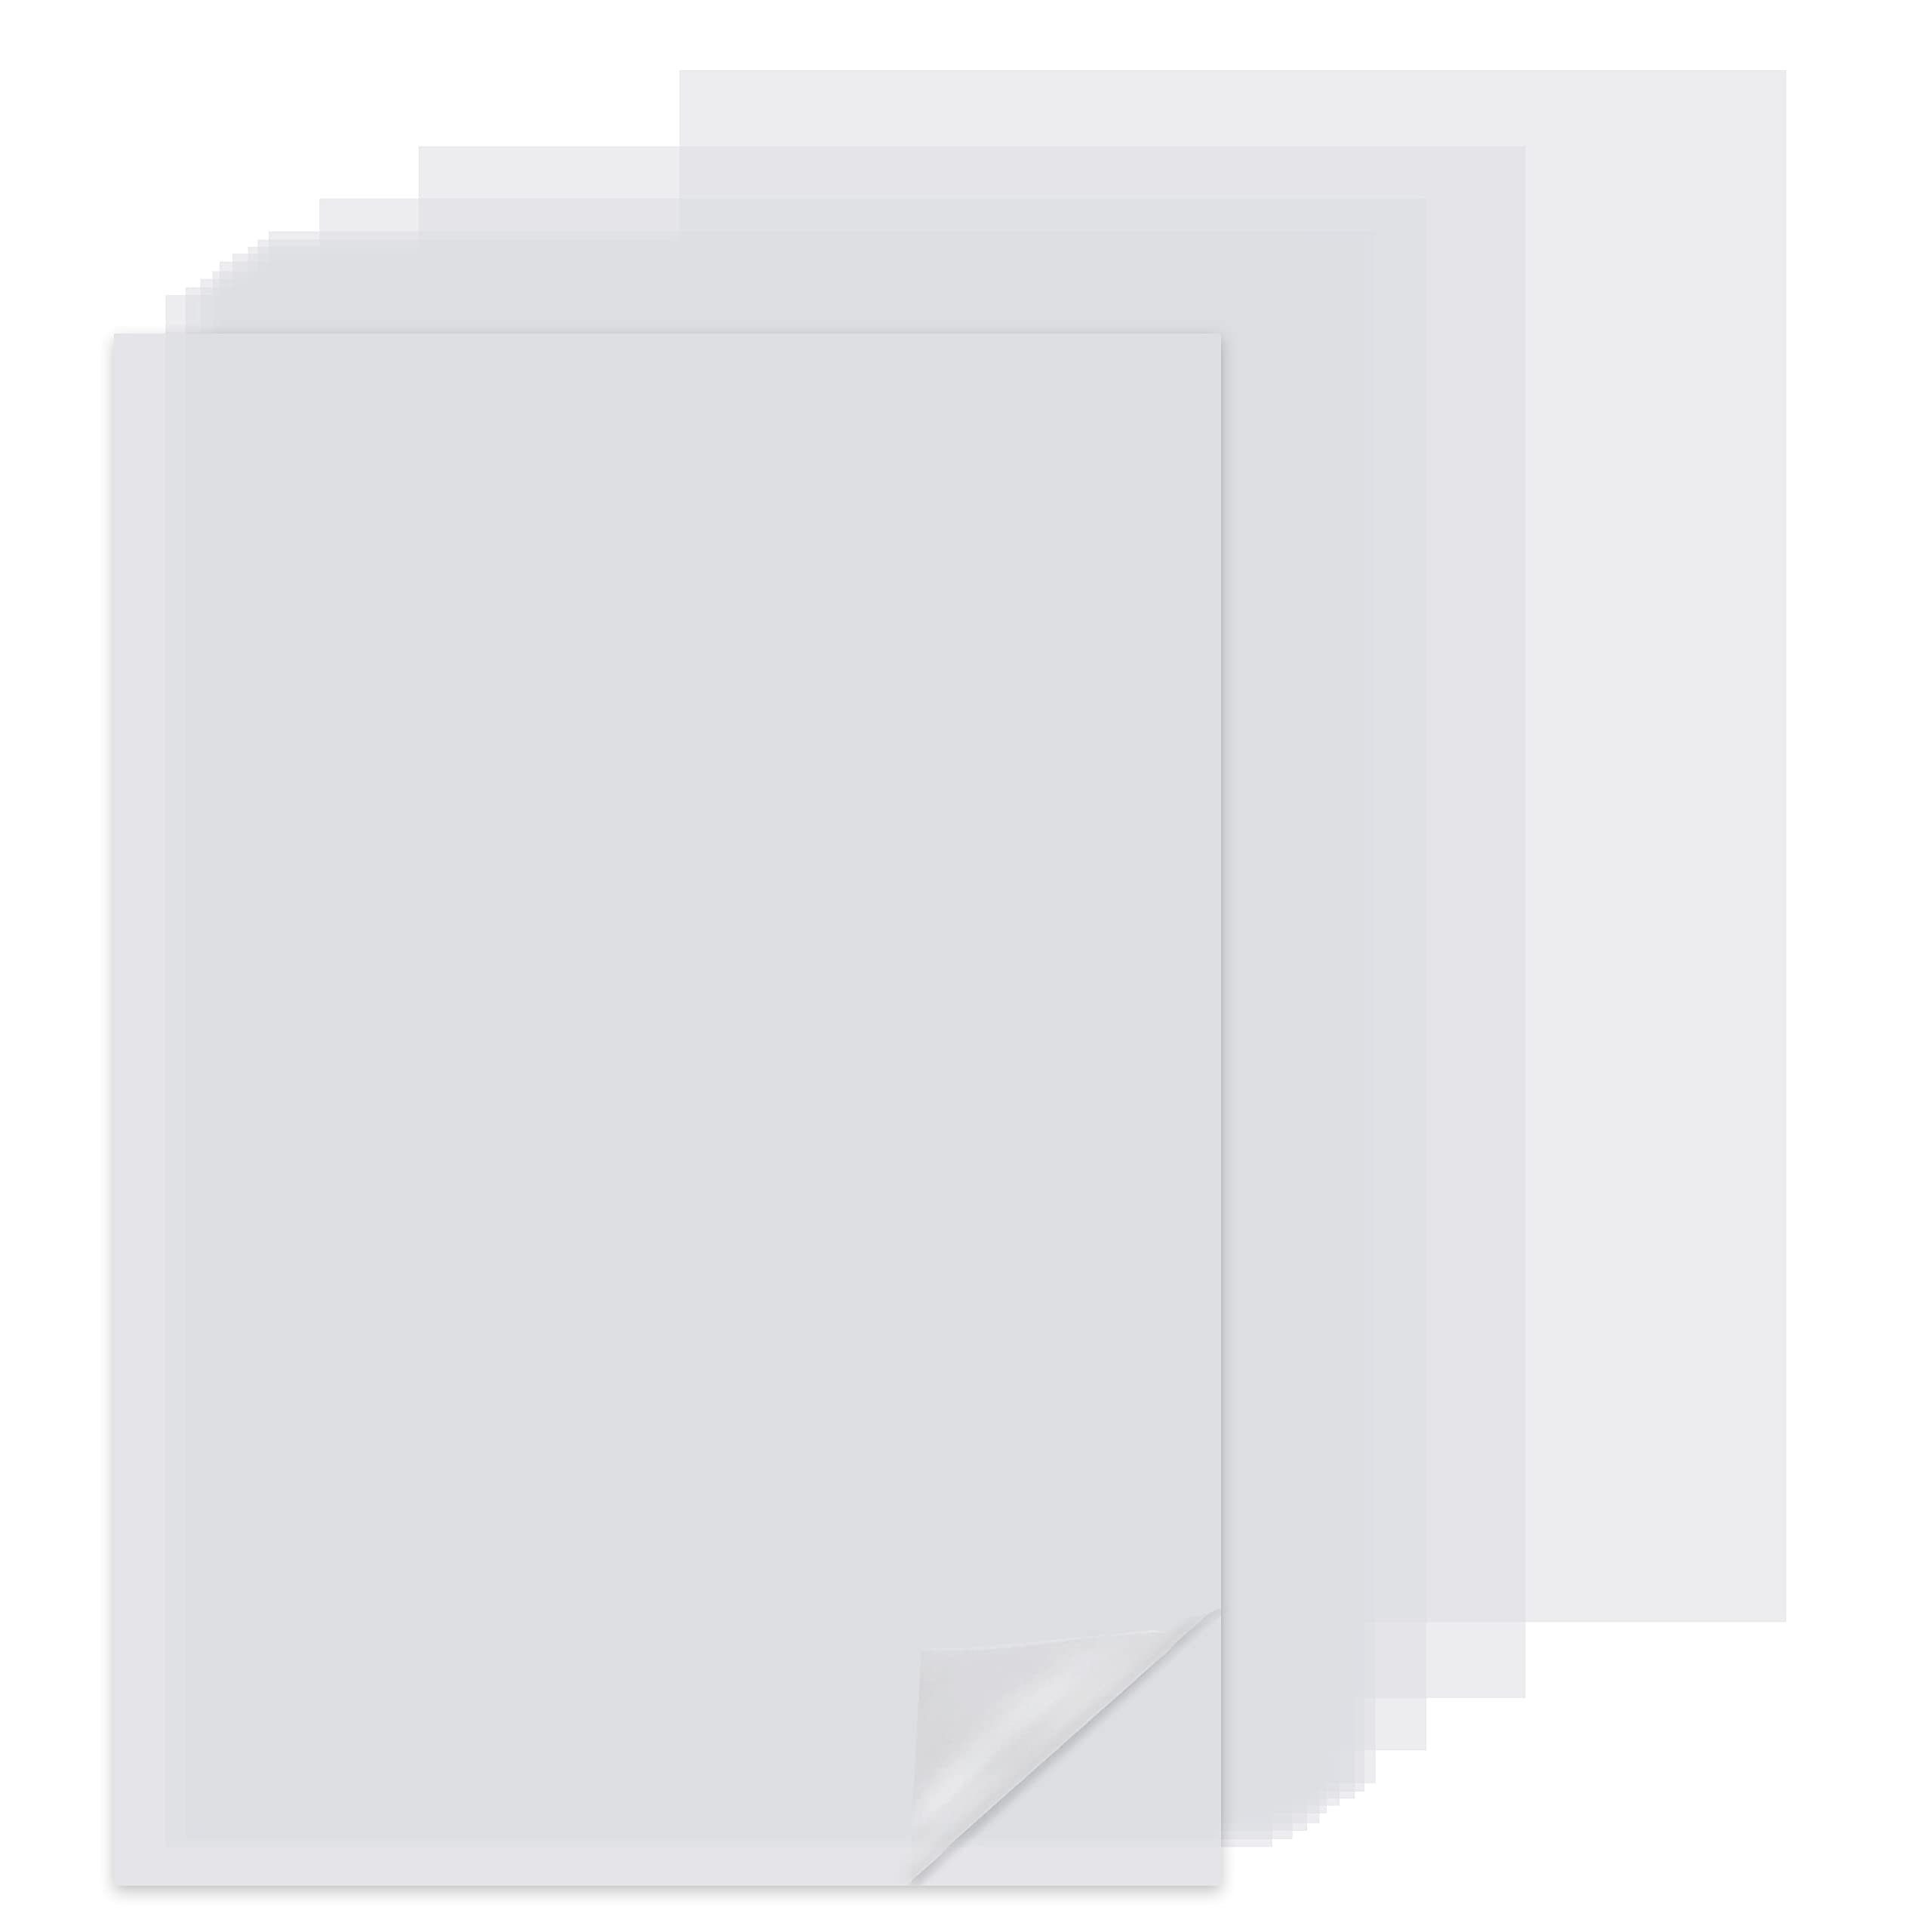 Belle Vous Transparentpapier Transparent Reispapier - A4 (100er Pack), Transparent Rice Paper - A4 (100 Pack)